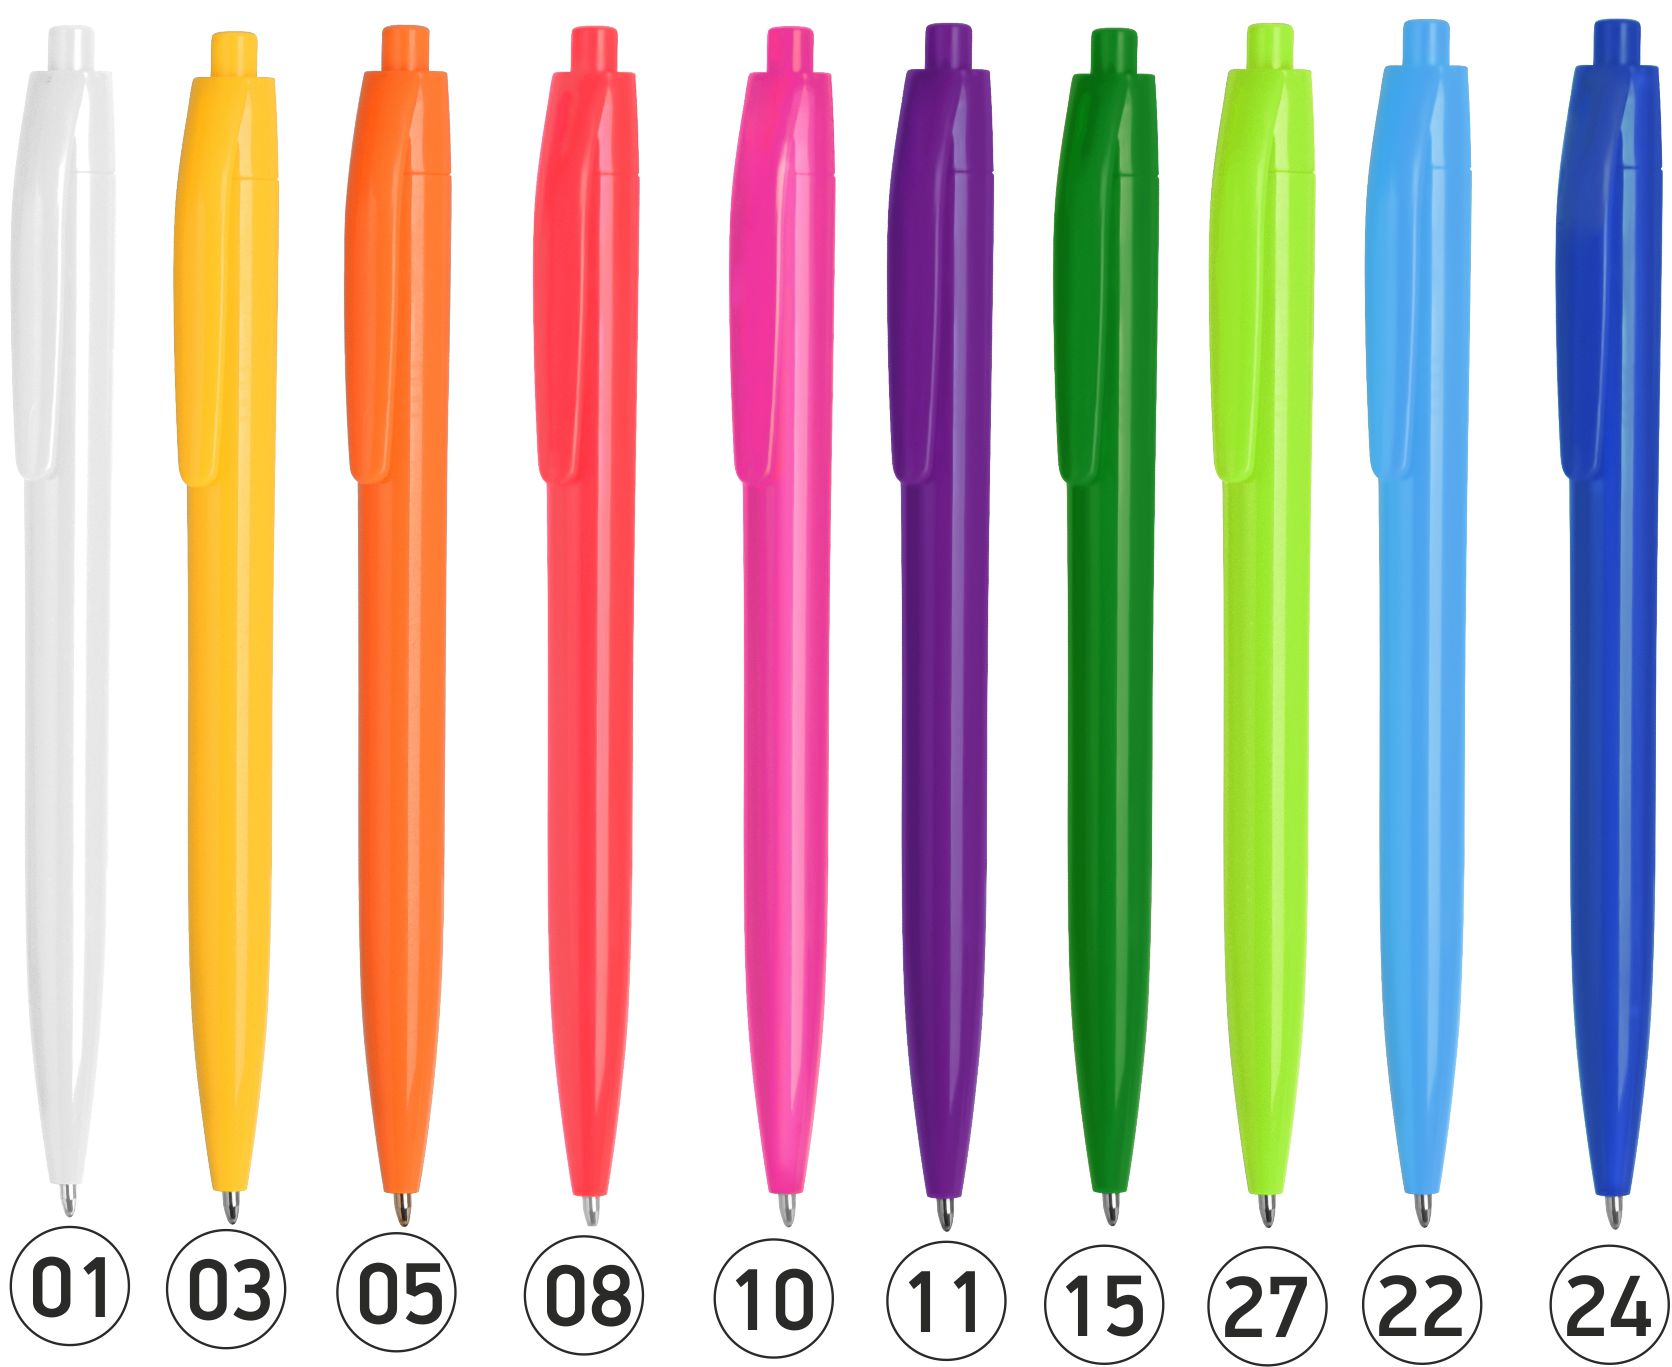 Купить ручку в спортмастере. Ручка шариковая n6. Ручка из пластмассы. Шариковые ручки пластиковые. Шариковая ручка из пластмассы.